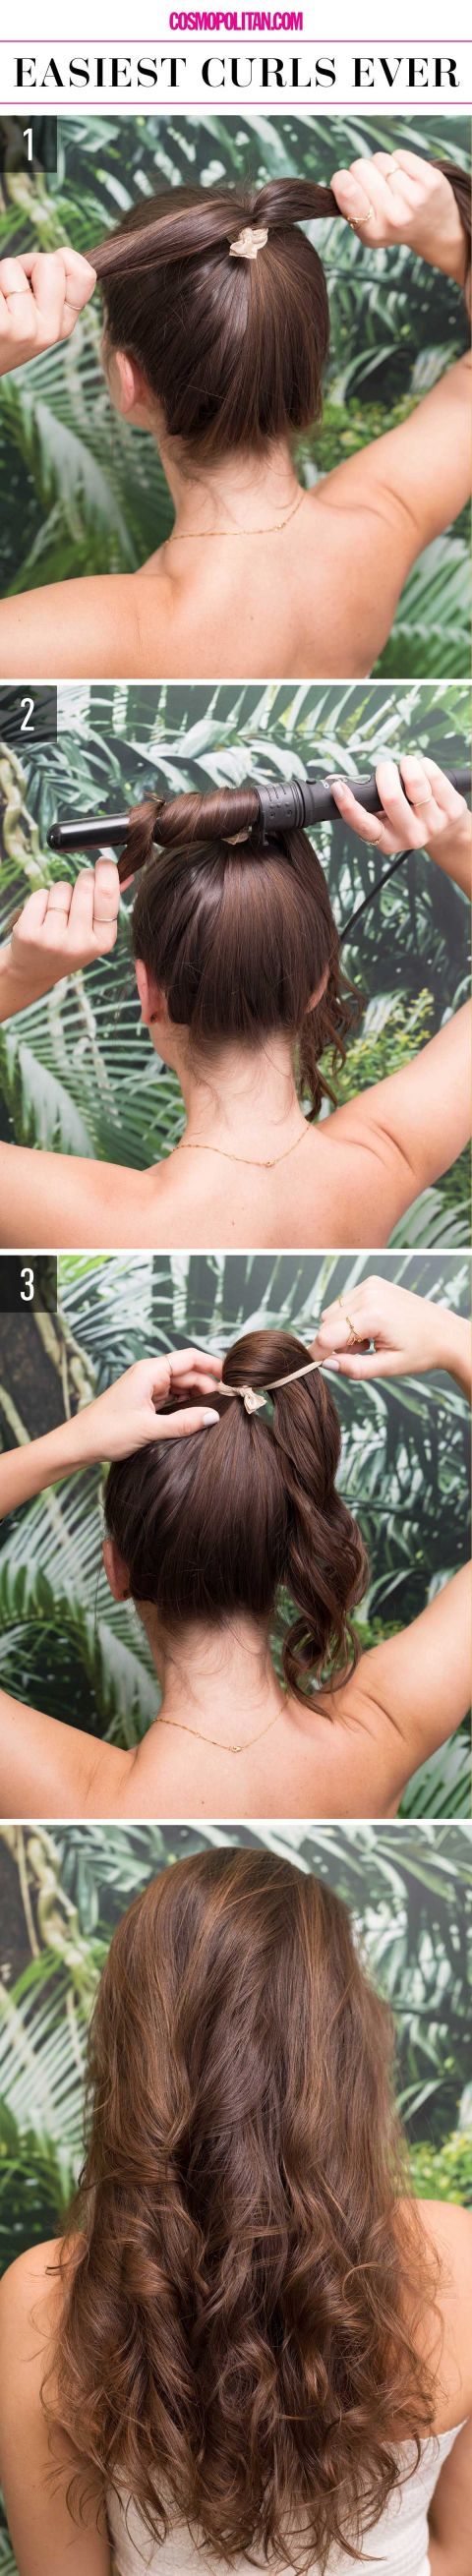 simple-way-to-get-curls via